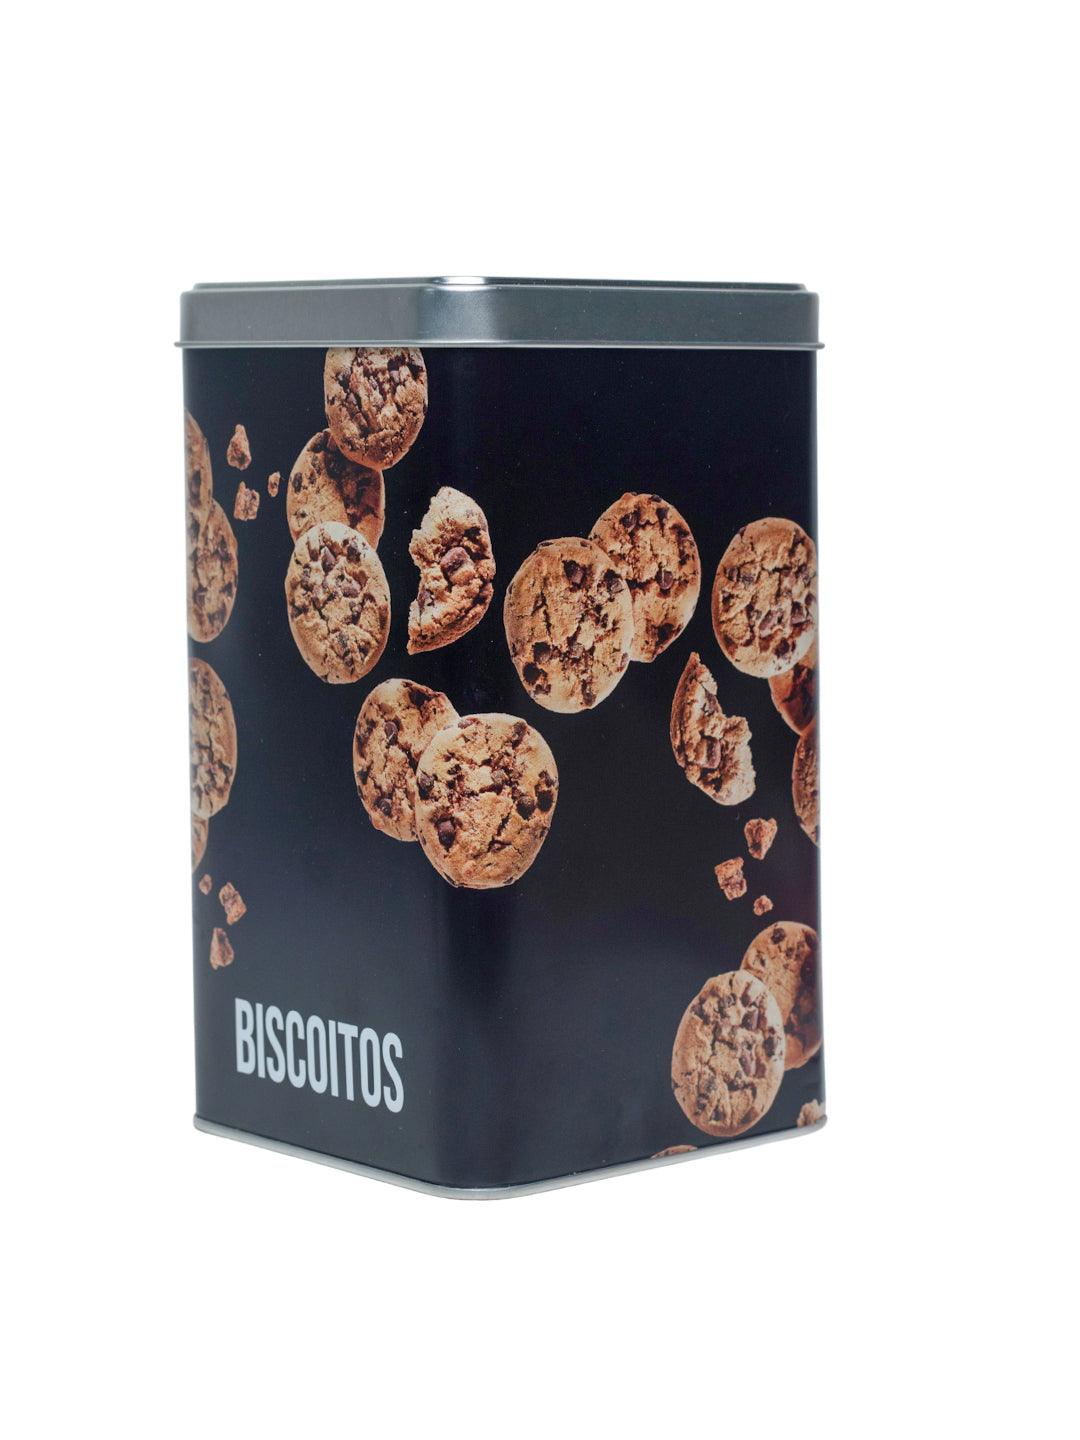 Metal Biscuites Jar - Black, 2050Ml - MARKET 99